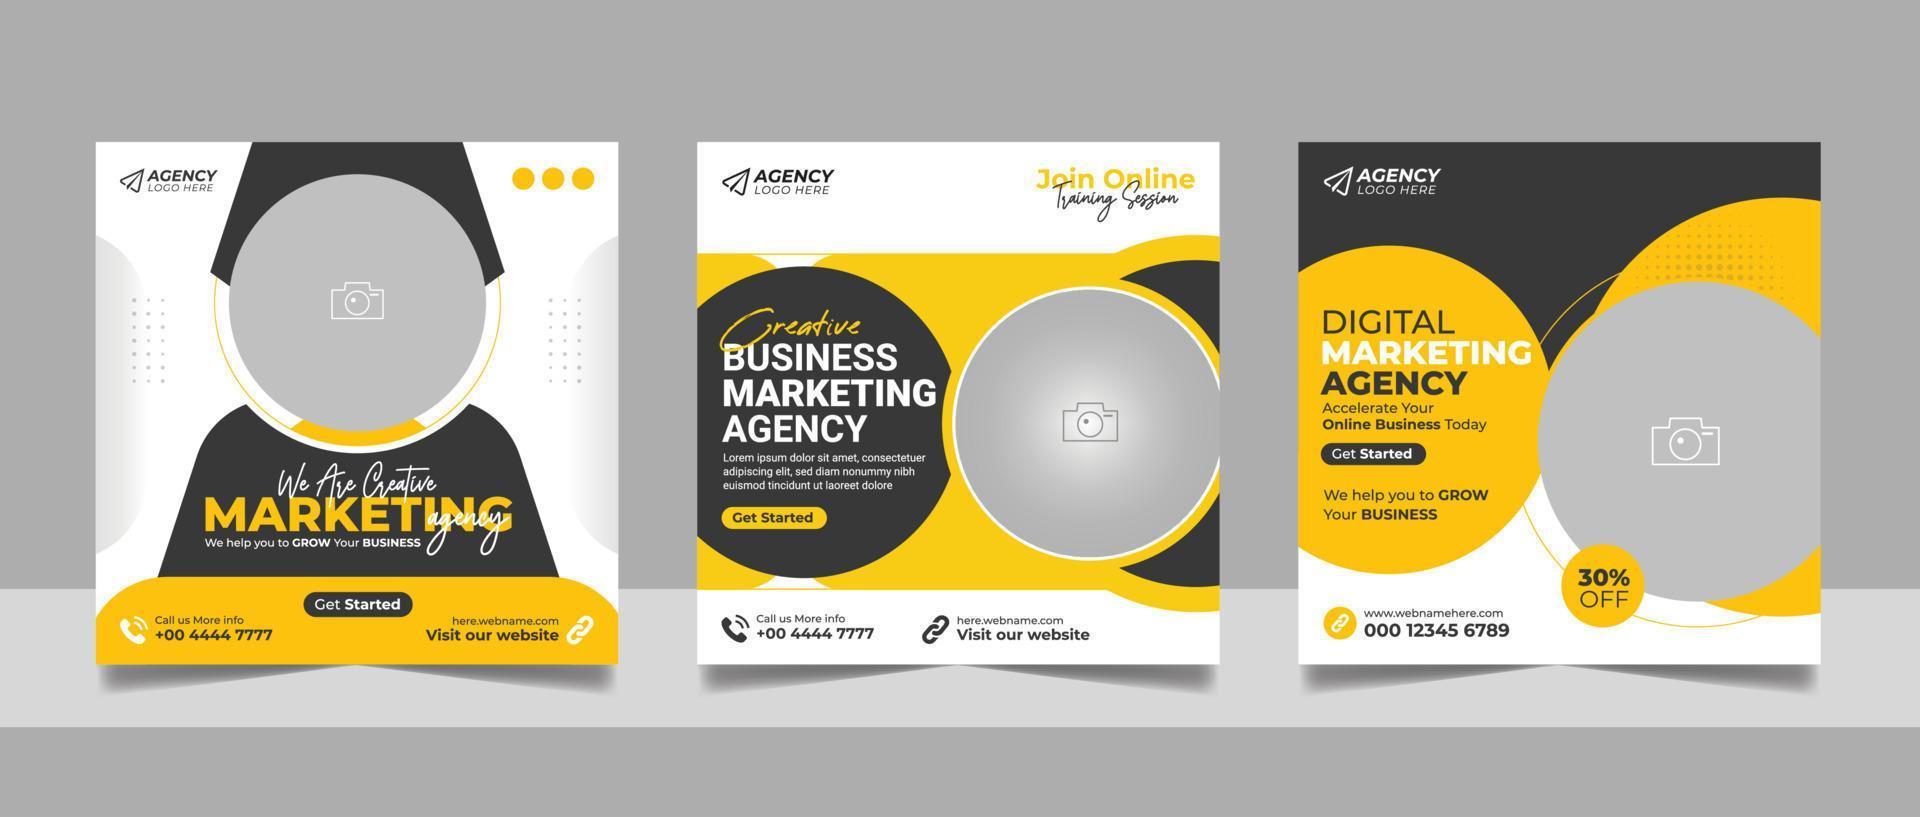 digital márketing agencia social medios de comunicación enviar colocar, corporativo negocio promoción cuadrado volantes web bandera modelo. vector